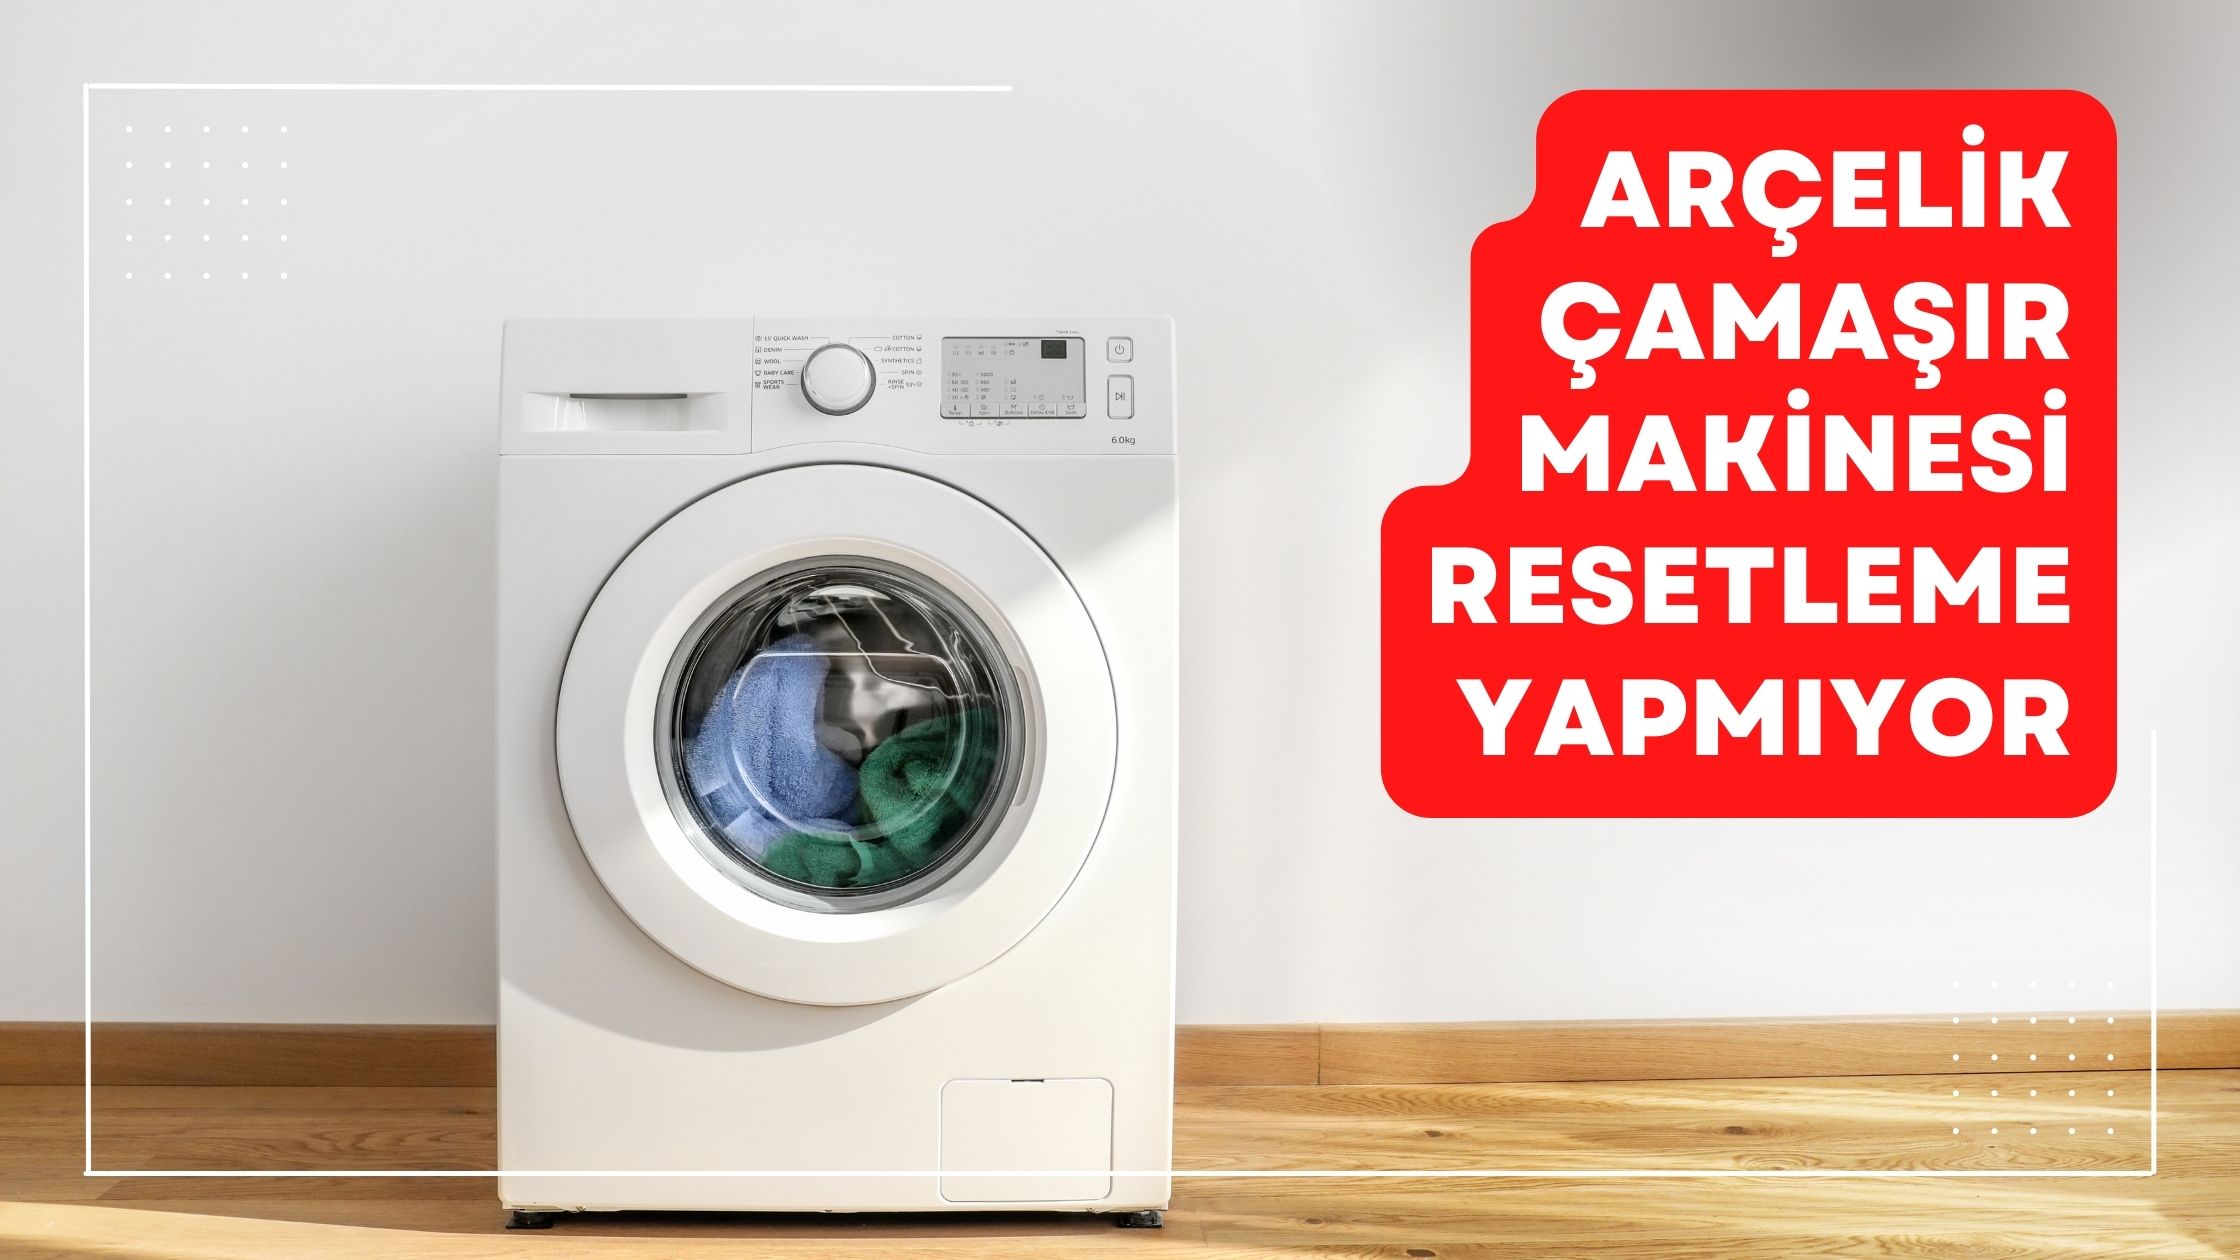 Arçelik Çamaşır Makinesi Resetleme Yapmıyor